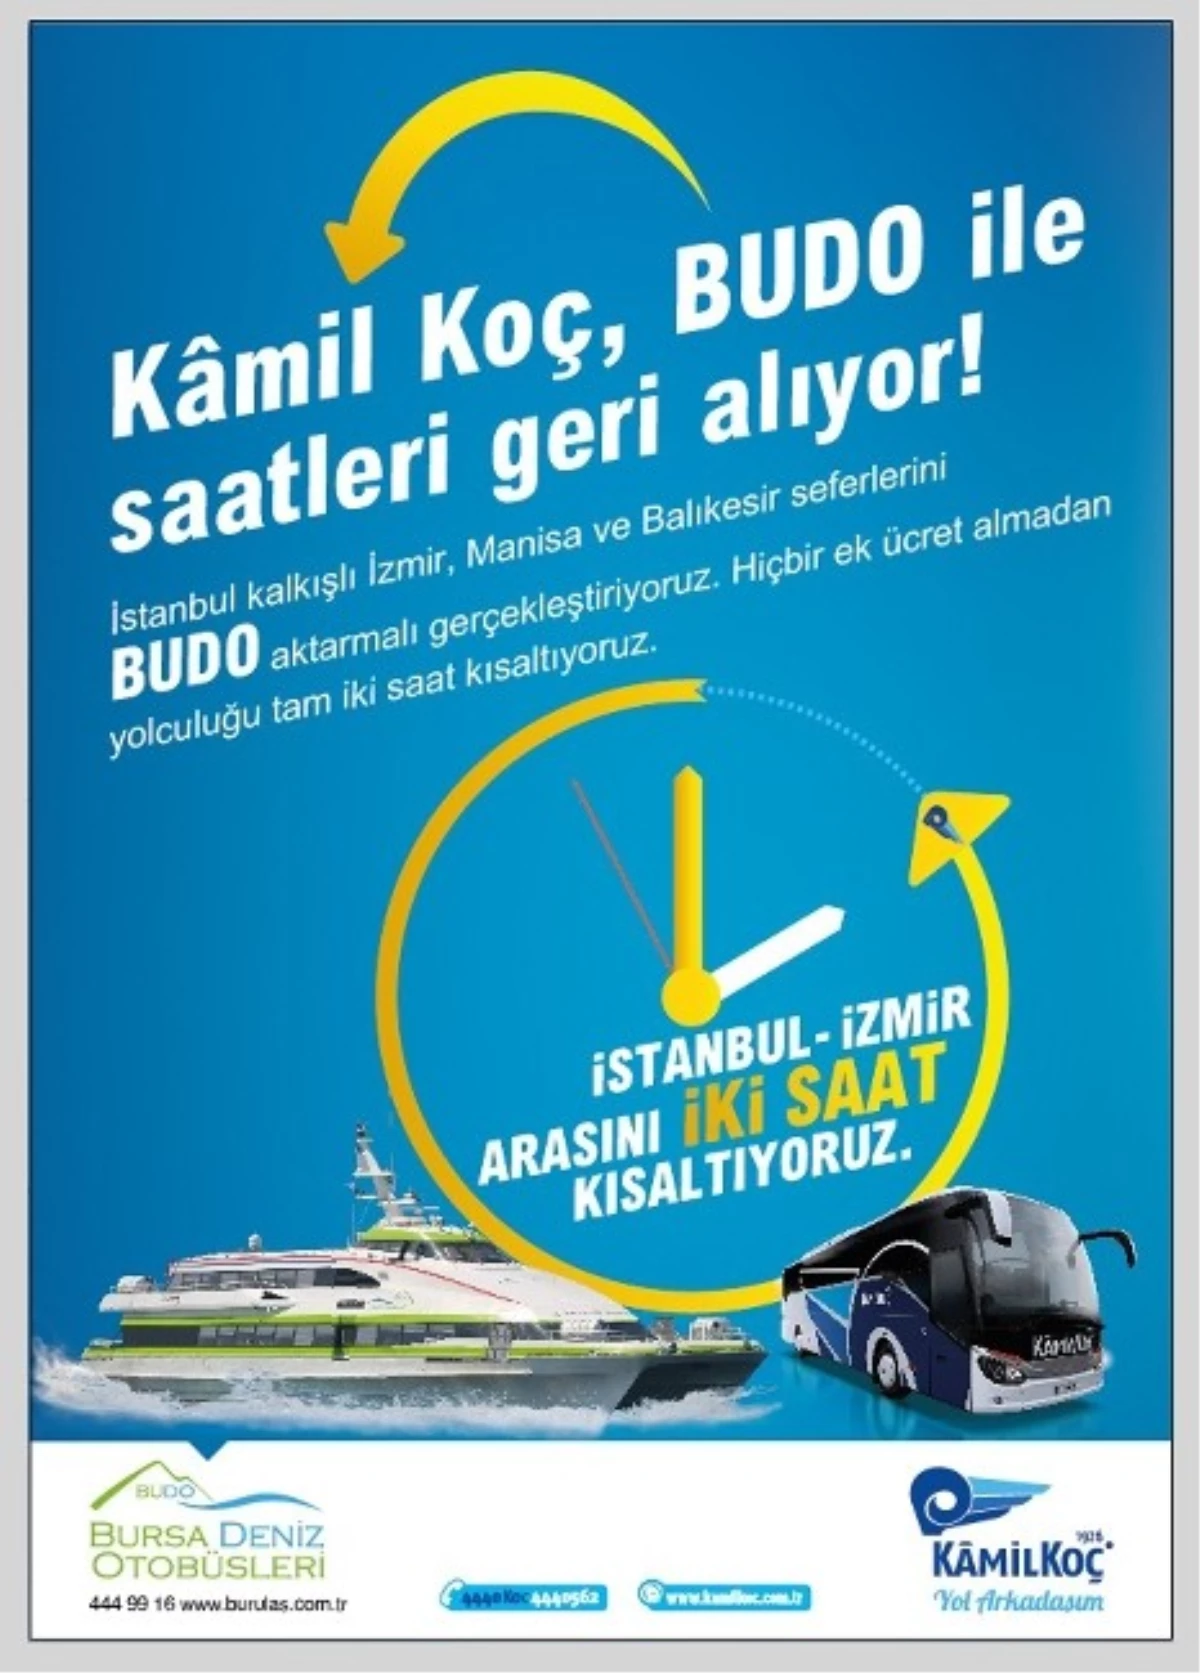 Budo ile İstanbul-İzmir Arası 2 Saat Kısaldı